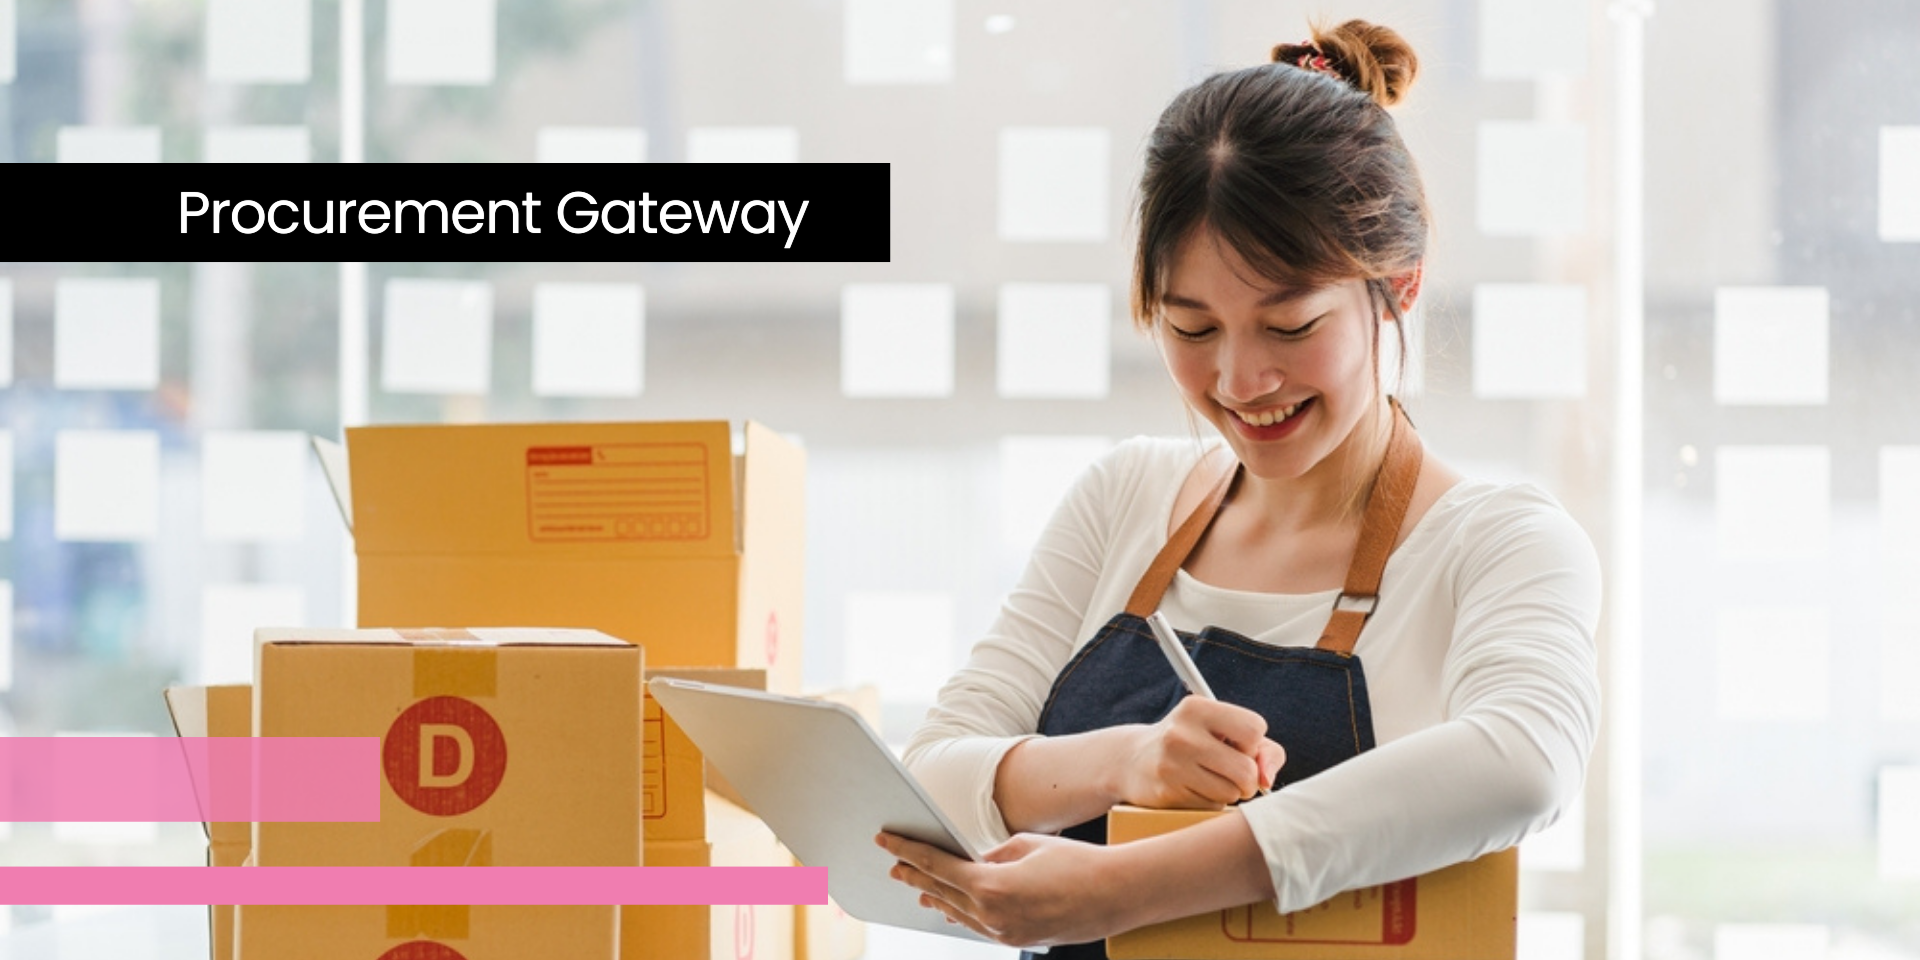 Procurement Gateway: Your one-stop procurement shop